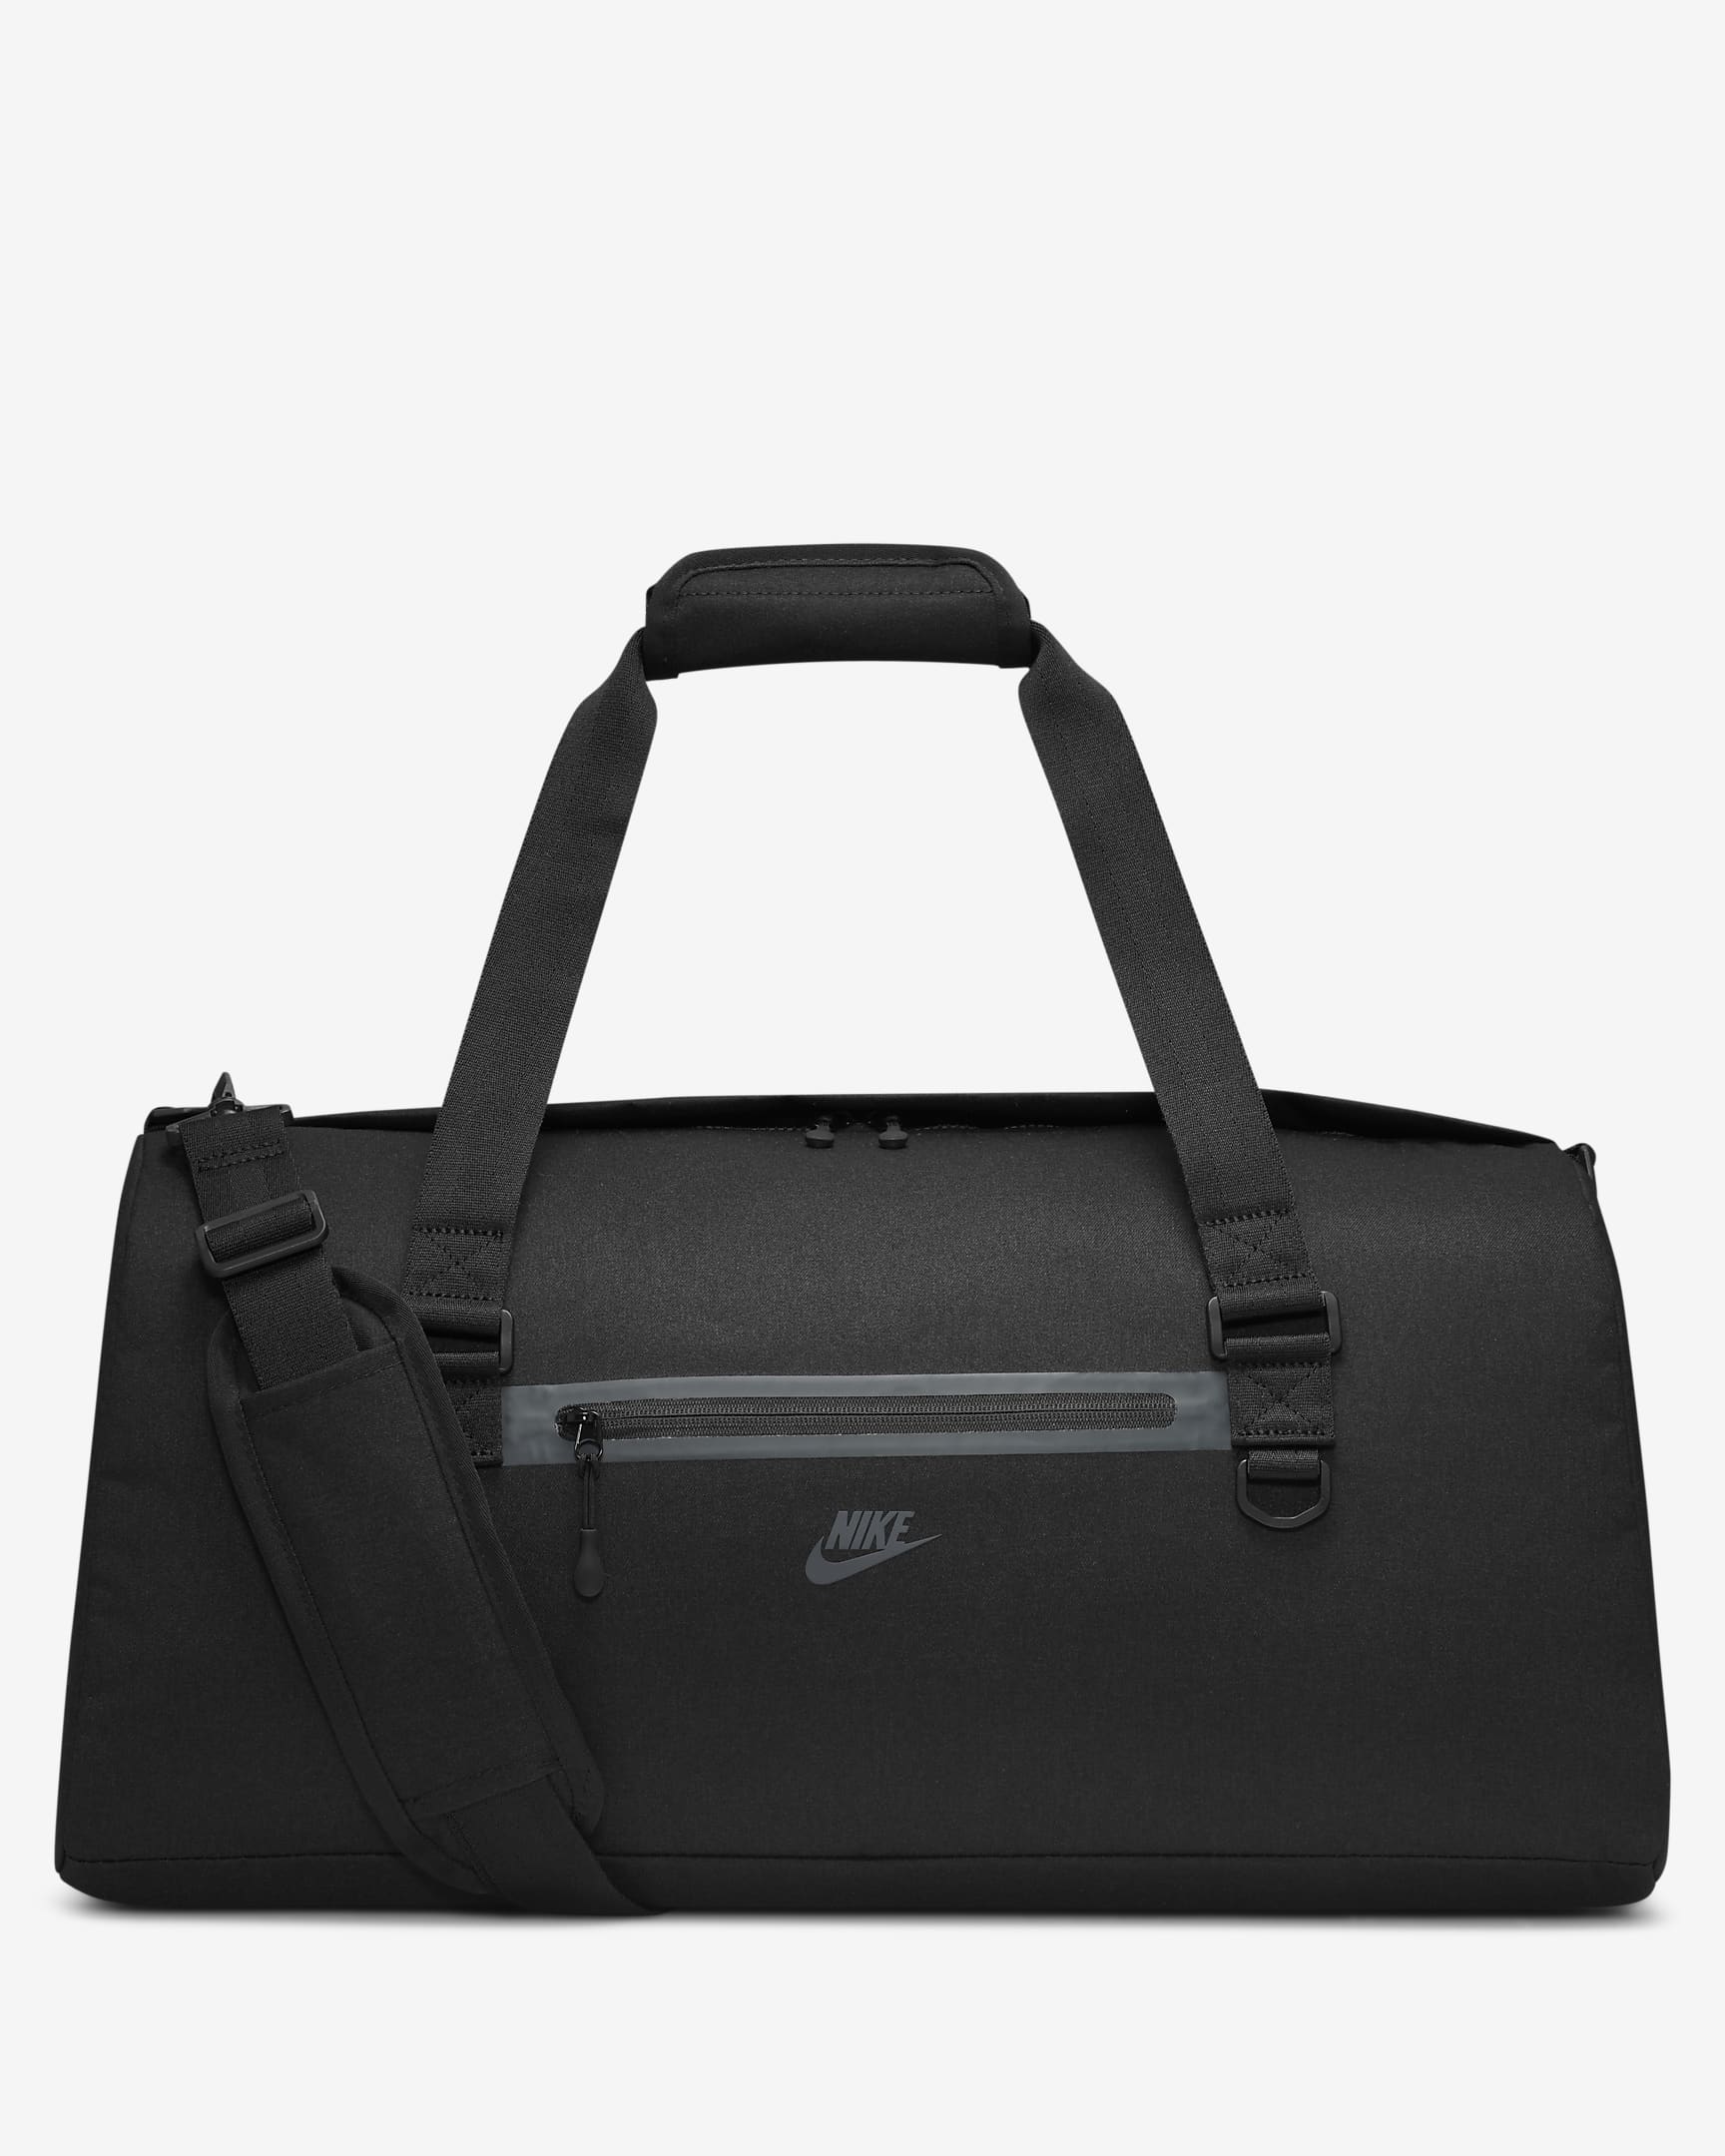 Nike Elemental Premium sporttas (45 liter) - Zwart/Zwart/Anthracite